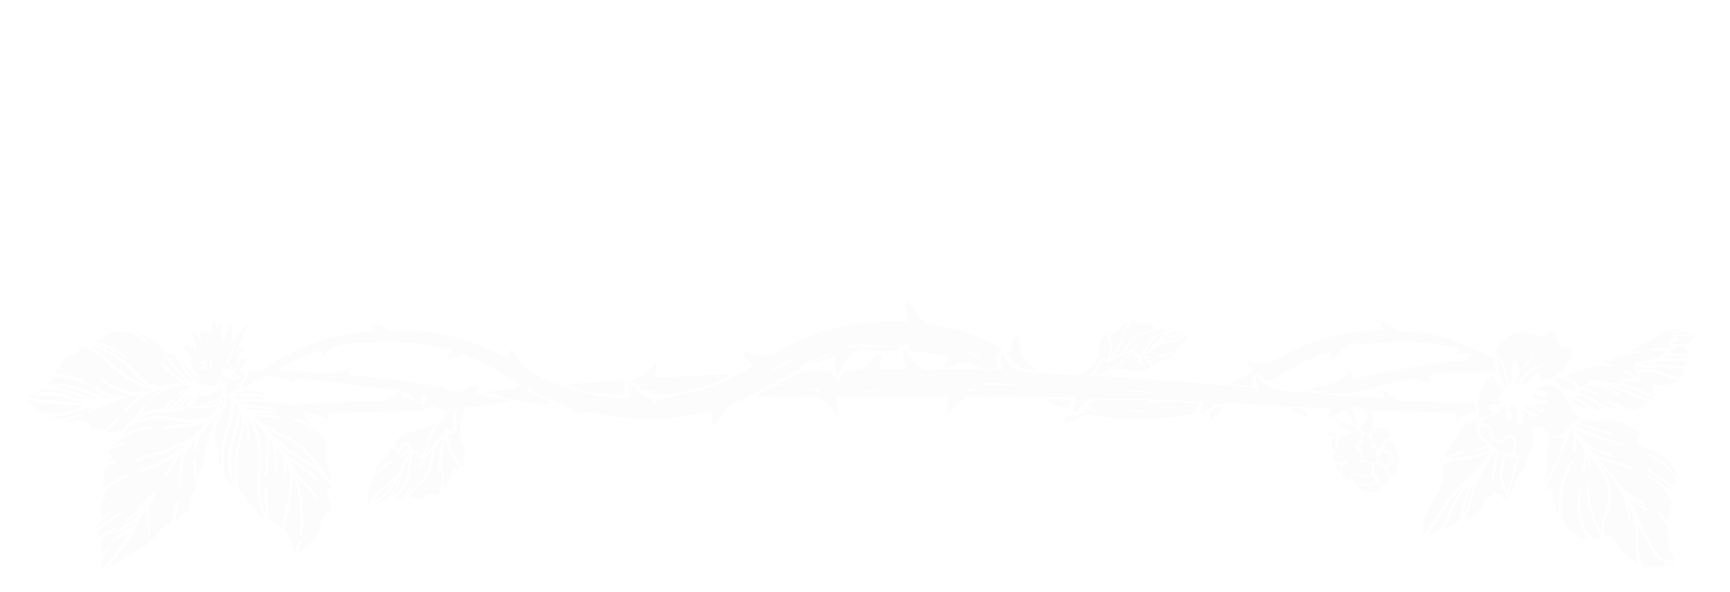 King The Bramble: Mountain